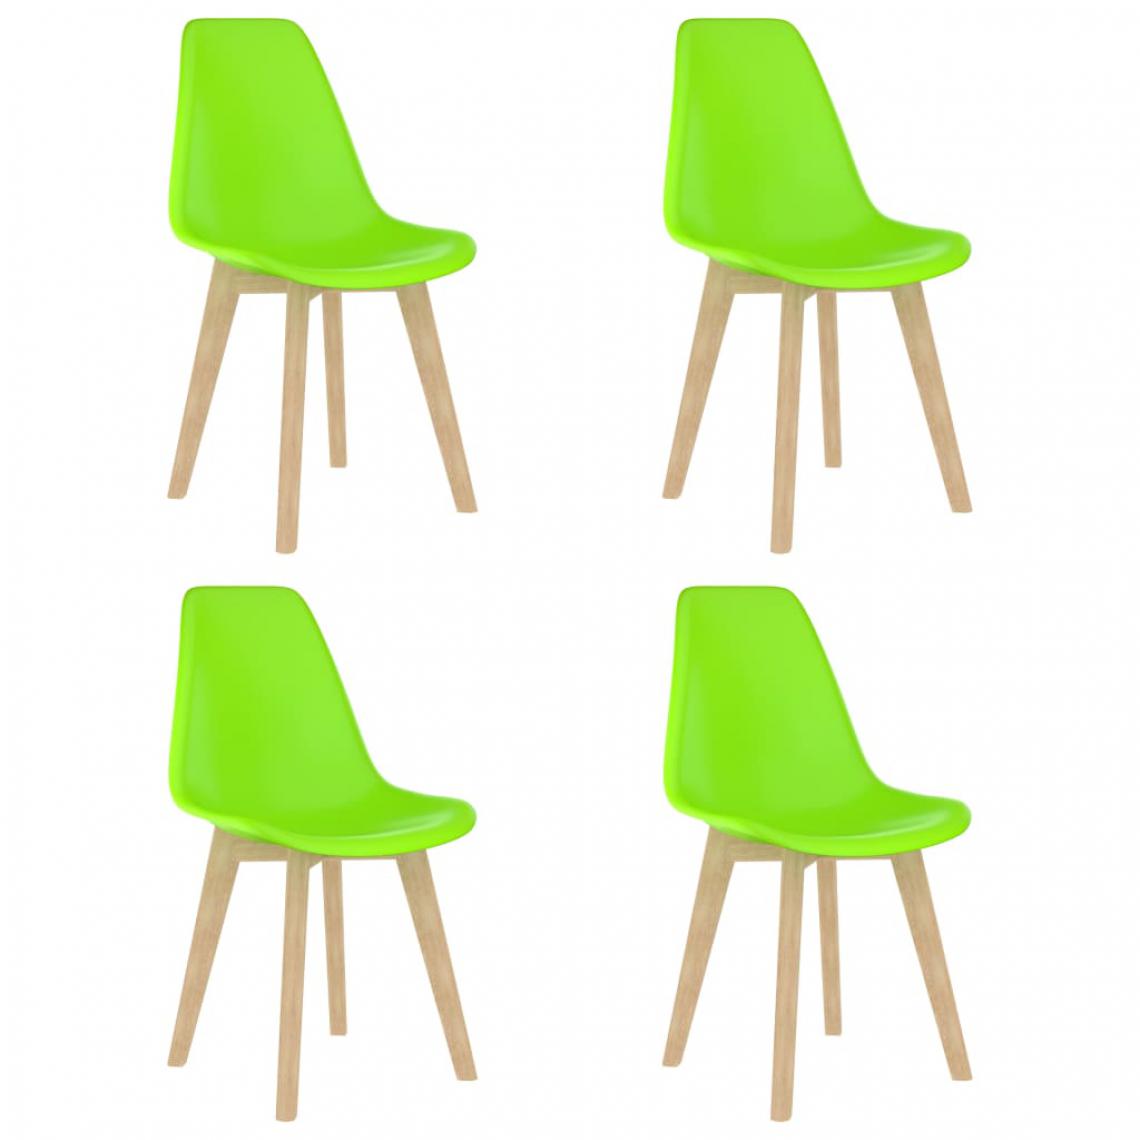 Icaverne - Inedit Fauteuils et chaises collection Alger Chaises de salle à manger 4 pcs Vert Plastique - Chaises